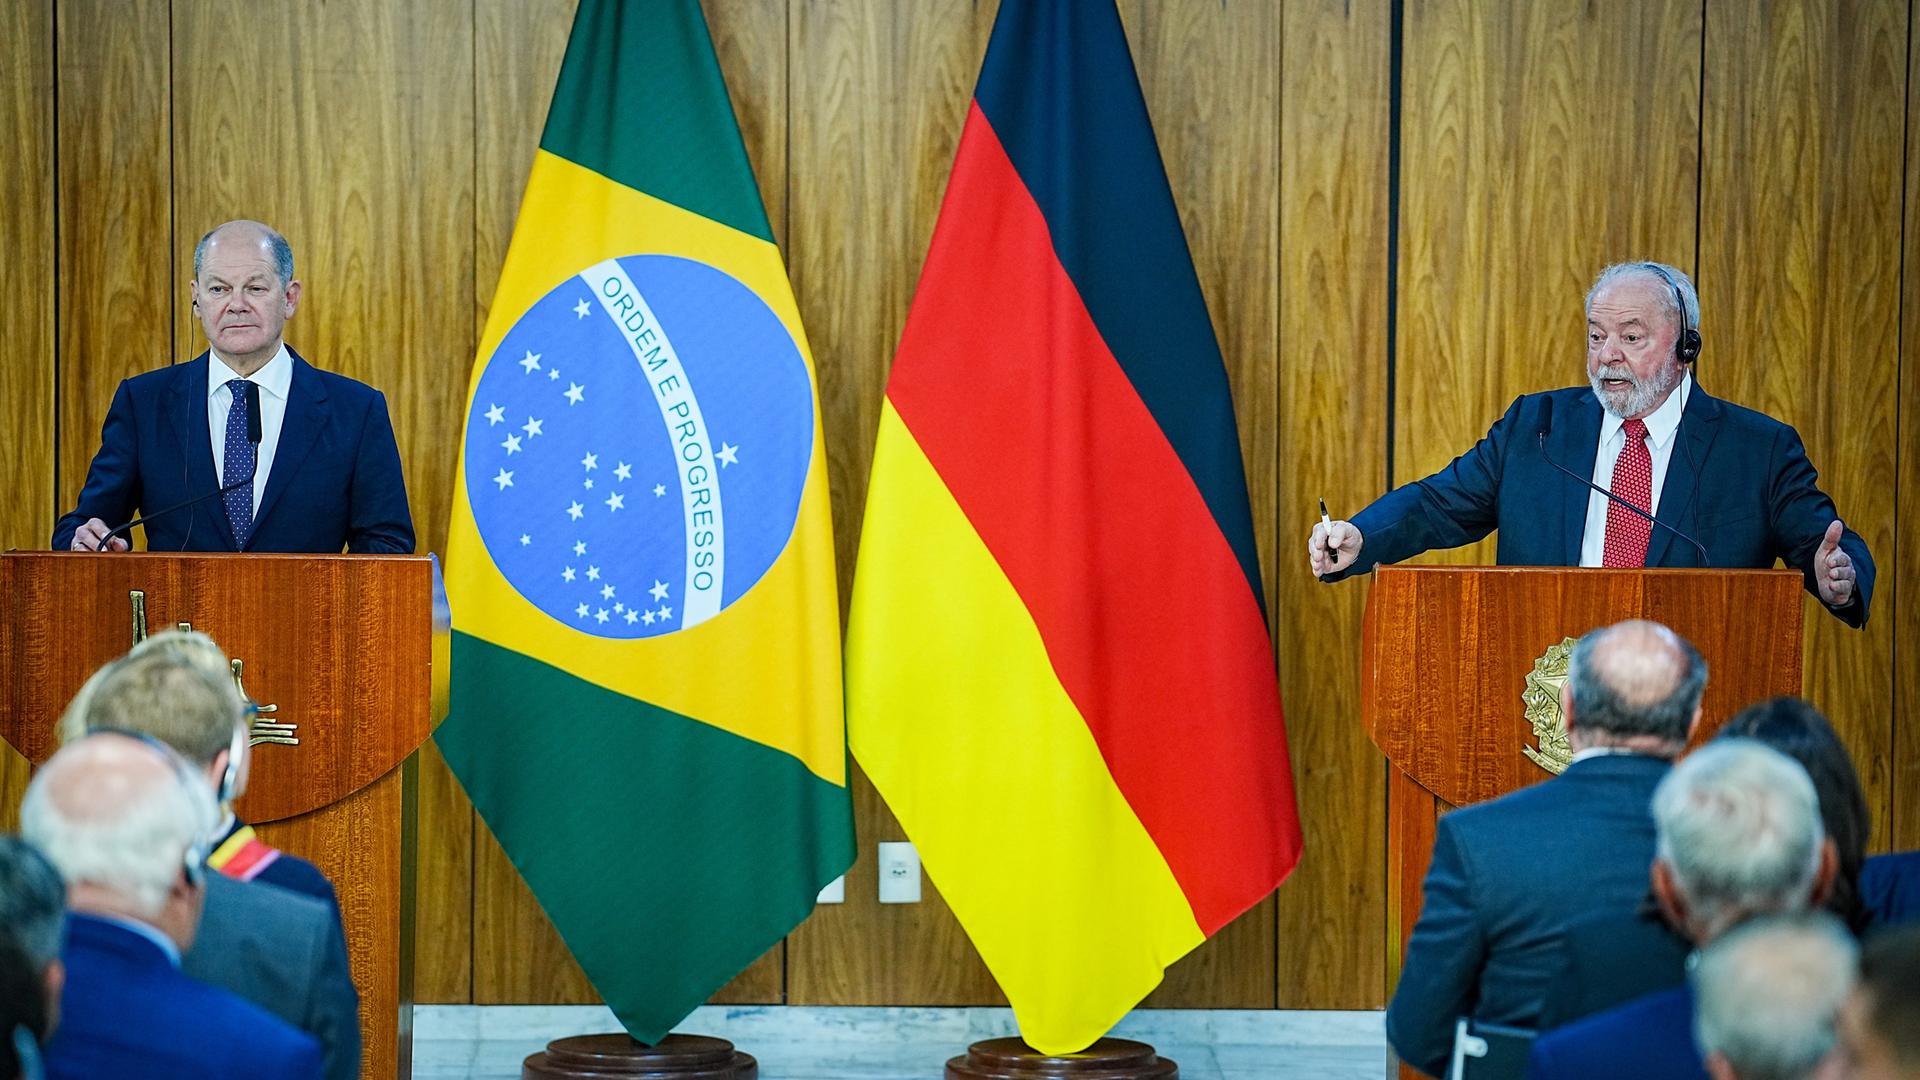 30.01.2023, Brasilien, Brasilia: Bundeskanzler Olaf Scholz (SPD) und Luiz Inacio Lula da Silva, Präsident von Brasilien, geben eine Pressekonferenz im Amtssitz des Präsidenten. 